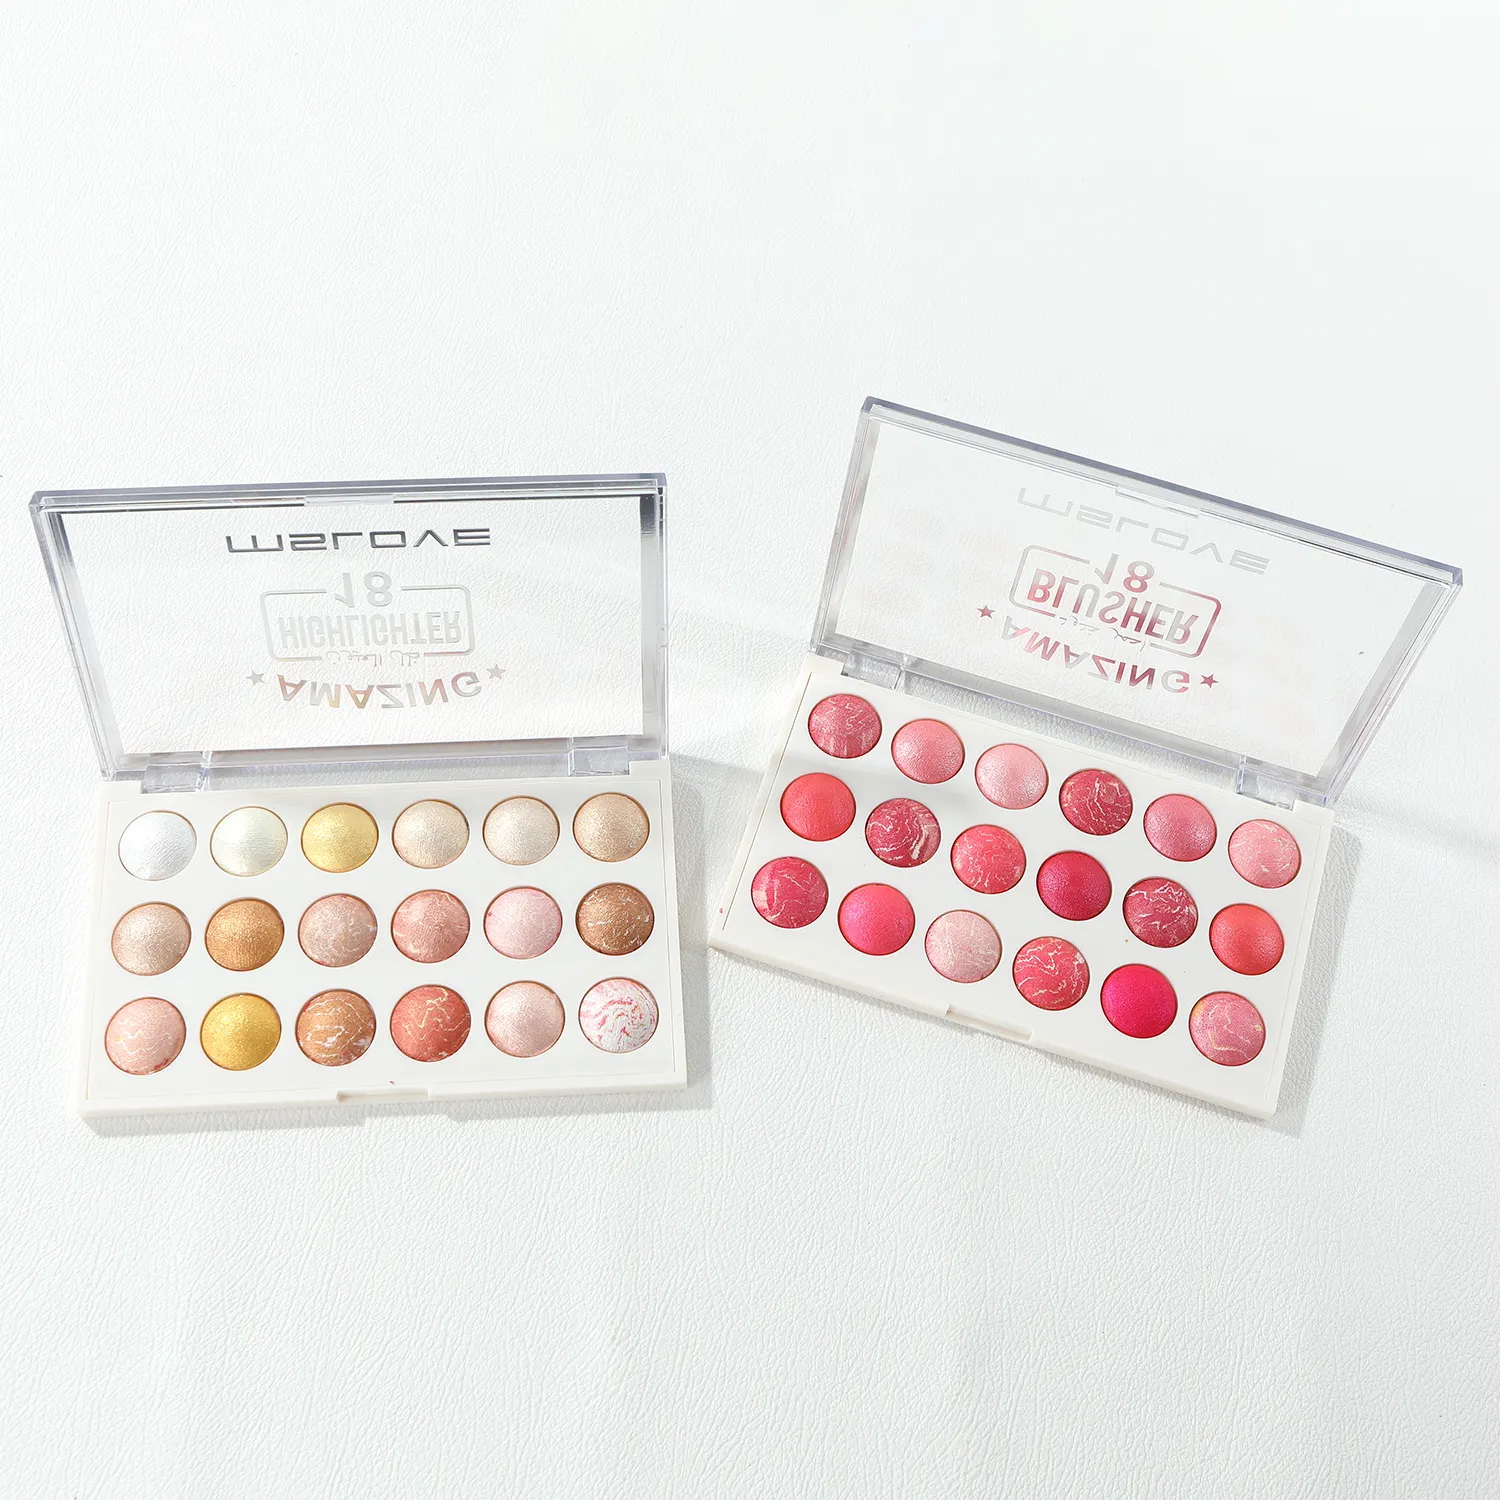 Mode Professionele Volledige Cosmetica Set Box 18 Kleur Make-Up Kits Make-Up Palet Gezicht Blusher En Hoogtepunt